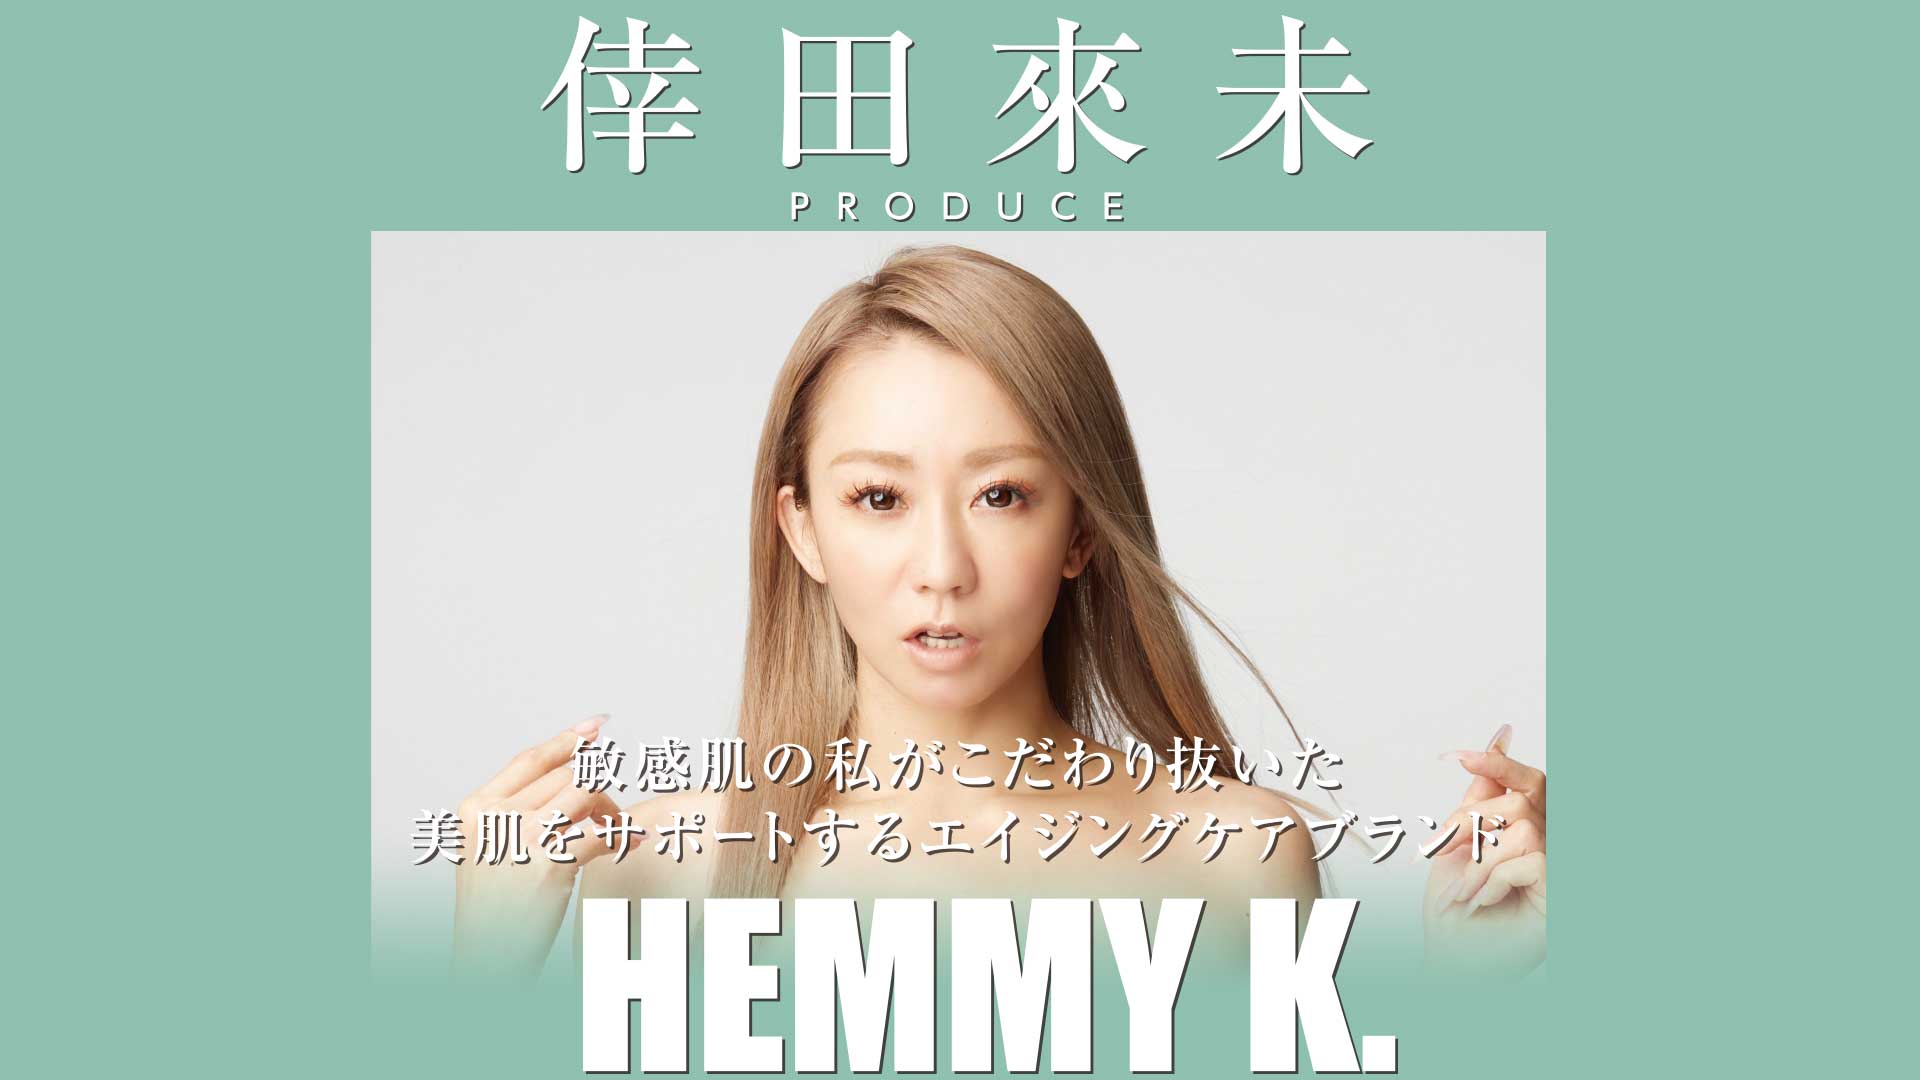 倖田來未スキンケアブランド Hemmy K 新商品発売決定 News 倖田來未 こうだくみ Official Website